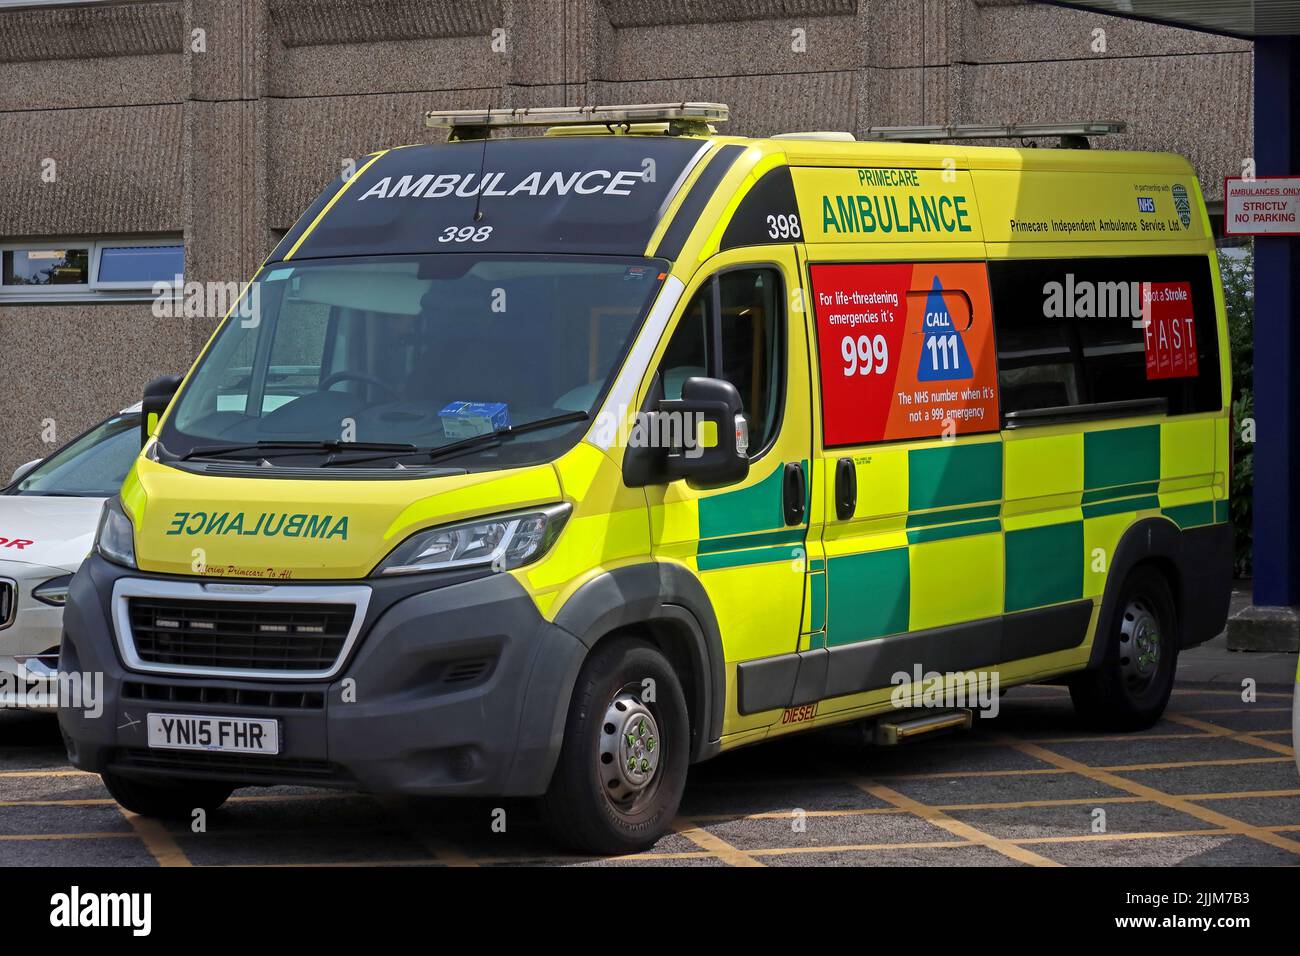 Primecare Ambulance, collaborando con NHS, all'ospedale di Warrington, Lovely Lane, Warrington, Cheshire, Inghilterra, Regno Unito, WA5 1QG Foto Stock